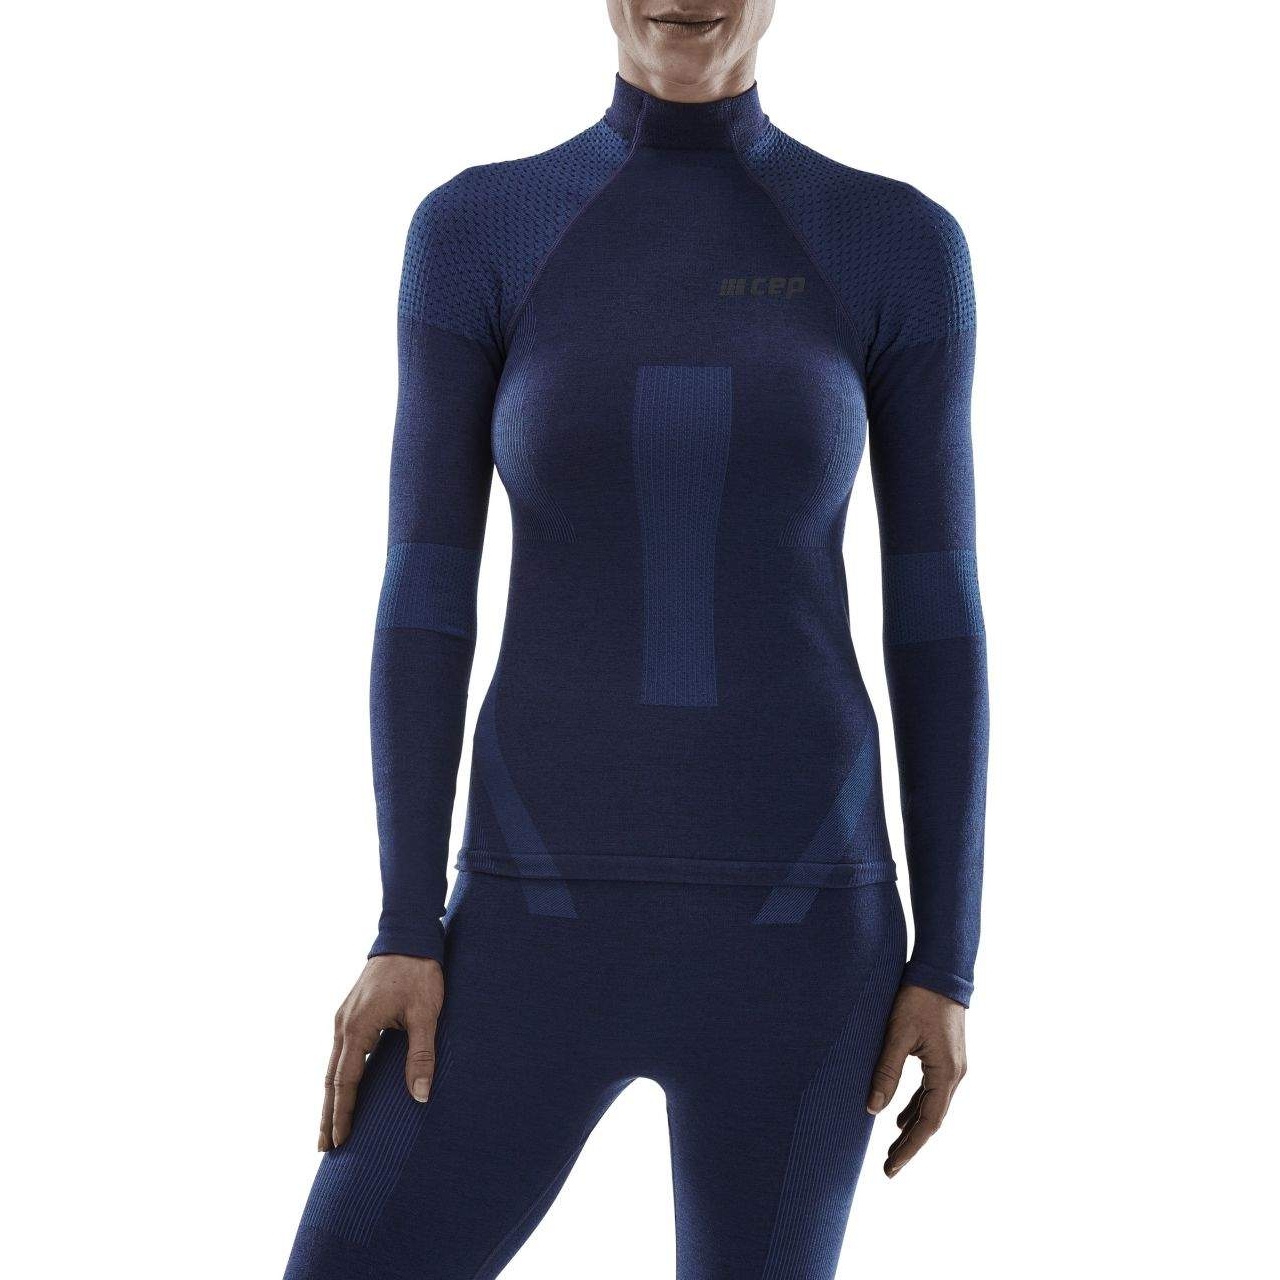 Productfoto van CEP Ski Touring Base Shirt met Lange Mouwen Dames - blauw